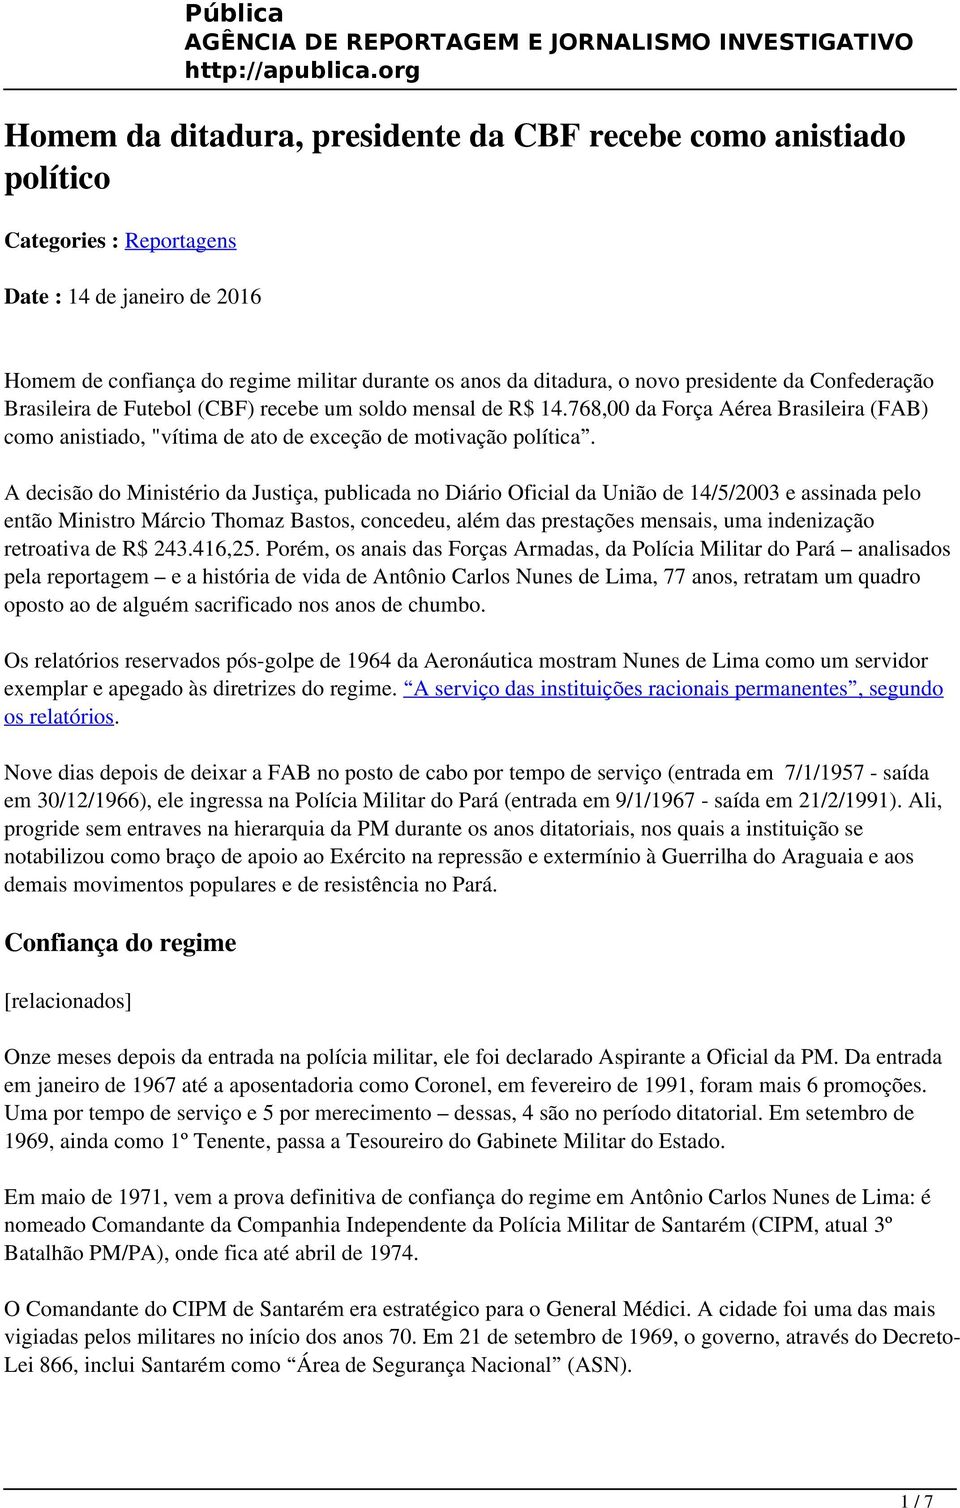 A decisão do Ministério da Justiça, publicada no Diário Oficial da União de 14/5/2003 e assinada pelo então Ministro Márcio Thomaz Bastos, concedeu, além das prestações mensais, uma indenização